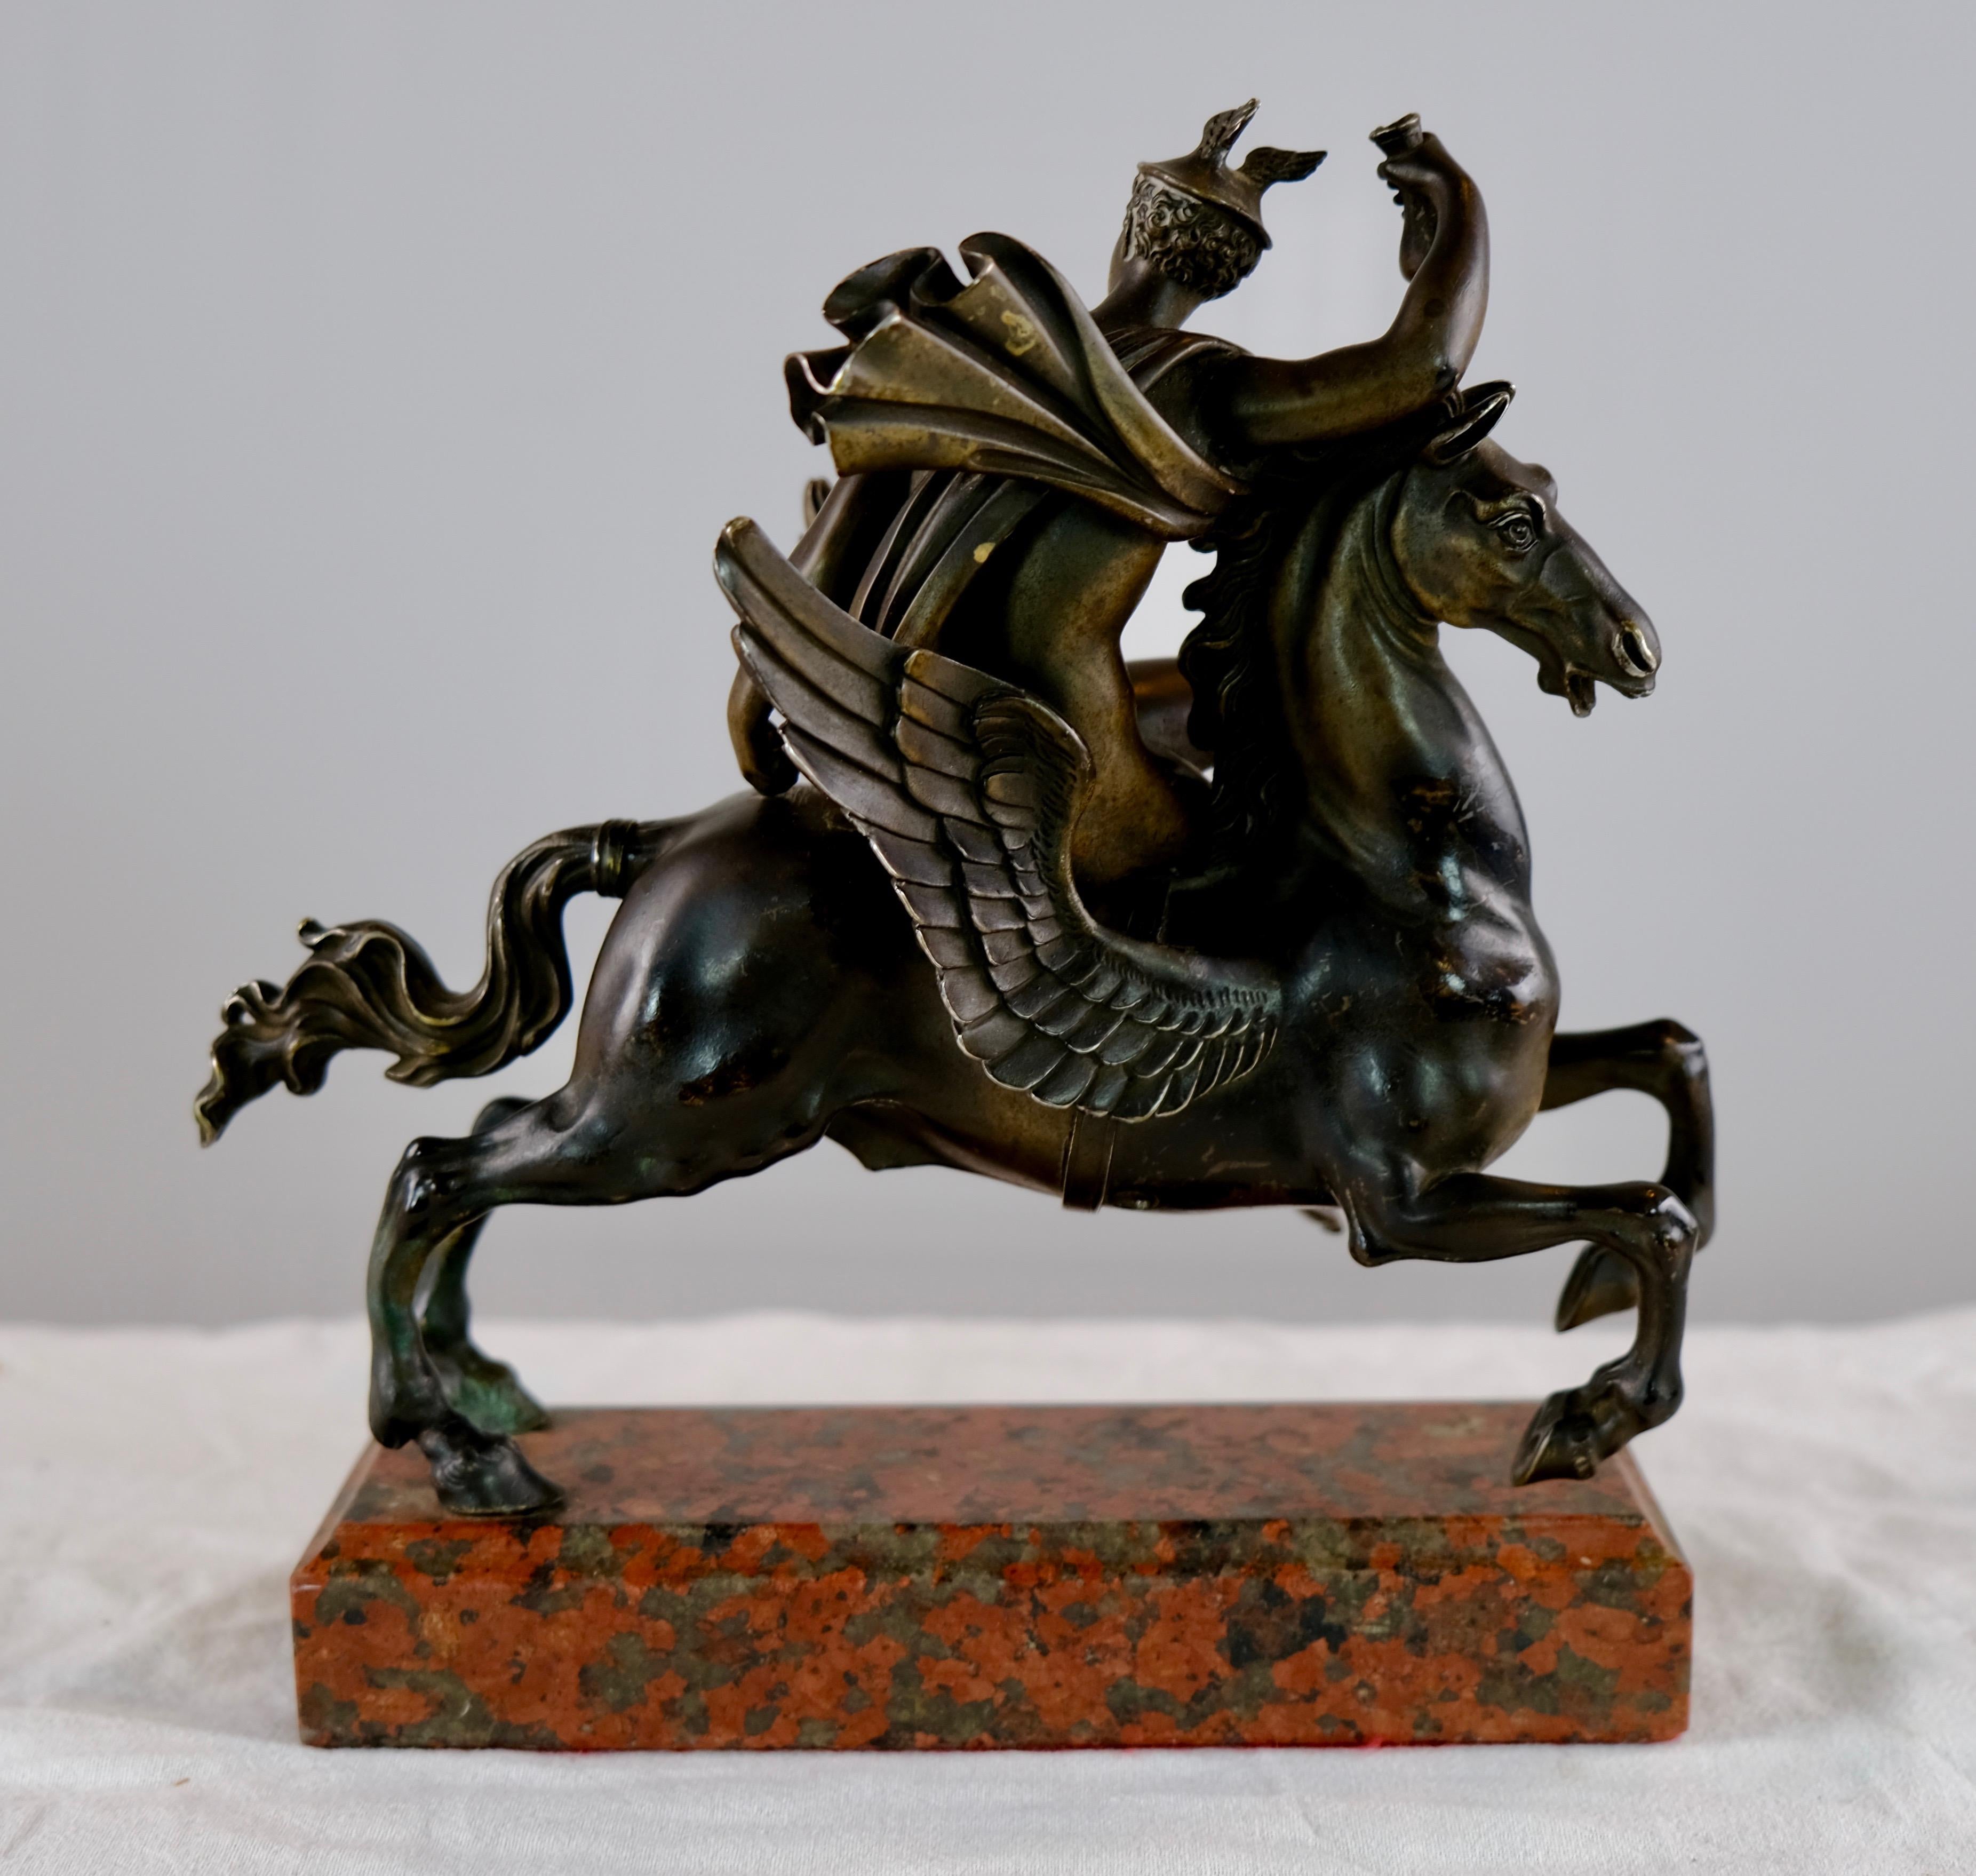 Italian Sculpture Depicting Mercurius Riding Pegasus, Italy Made Around Year 1800